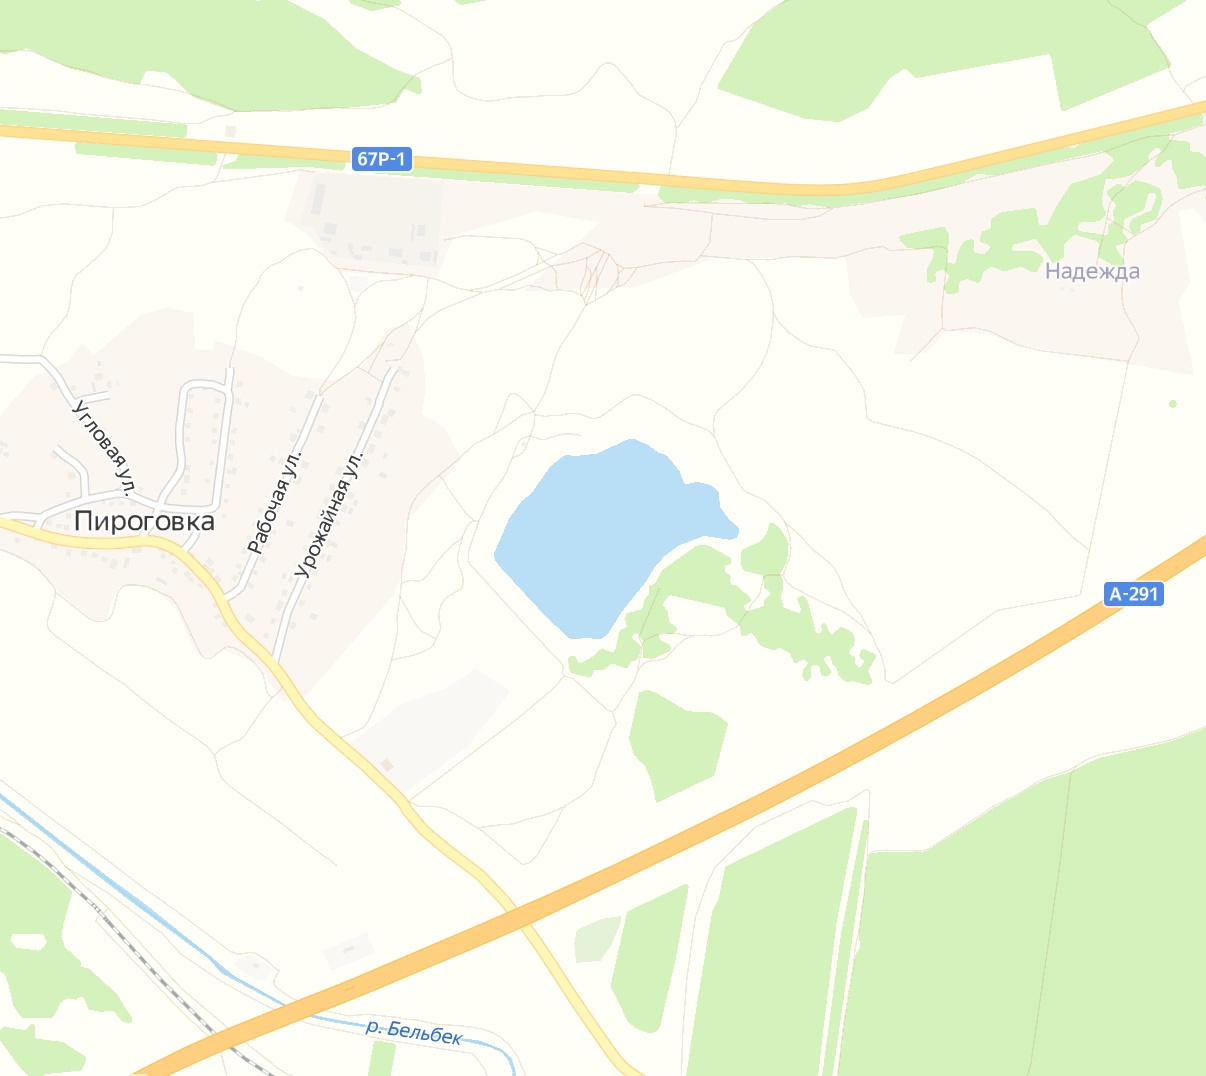 В Севастополе предотвращена попытка незаконного завладения землей через СЭЗ предприятием-«пустышкой»